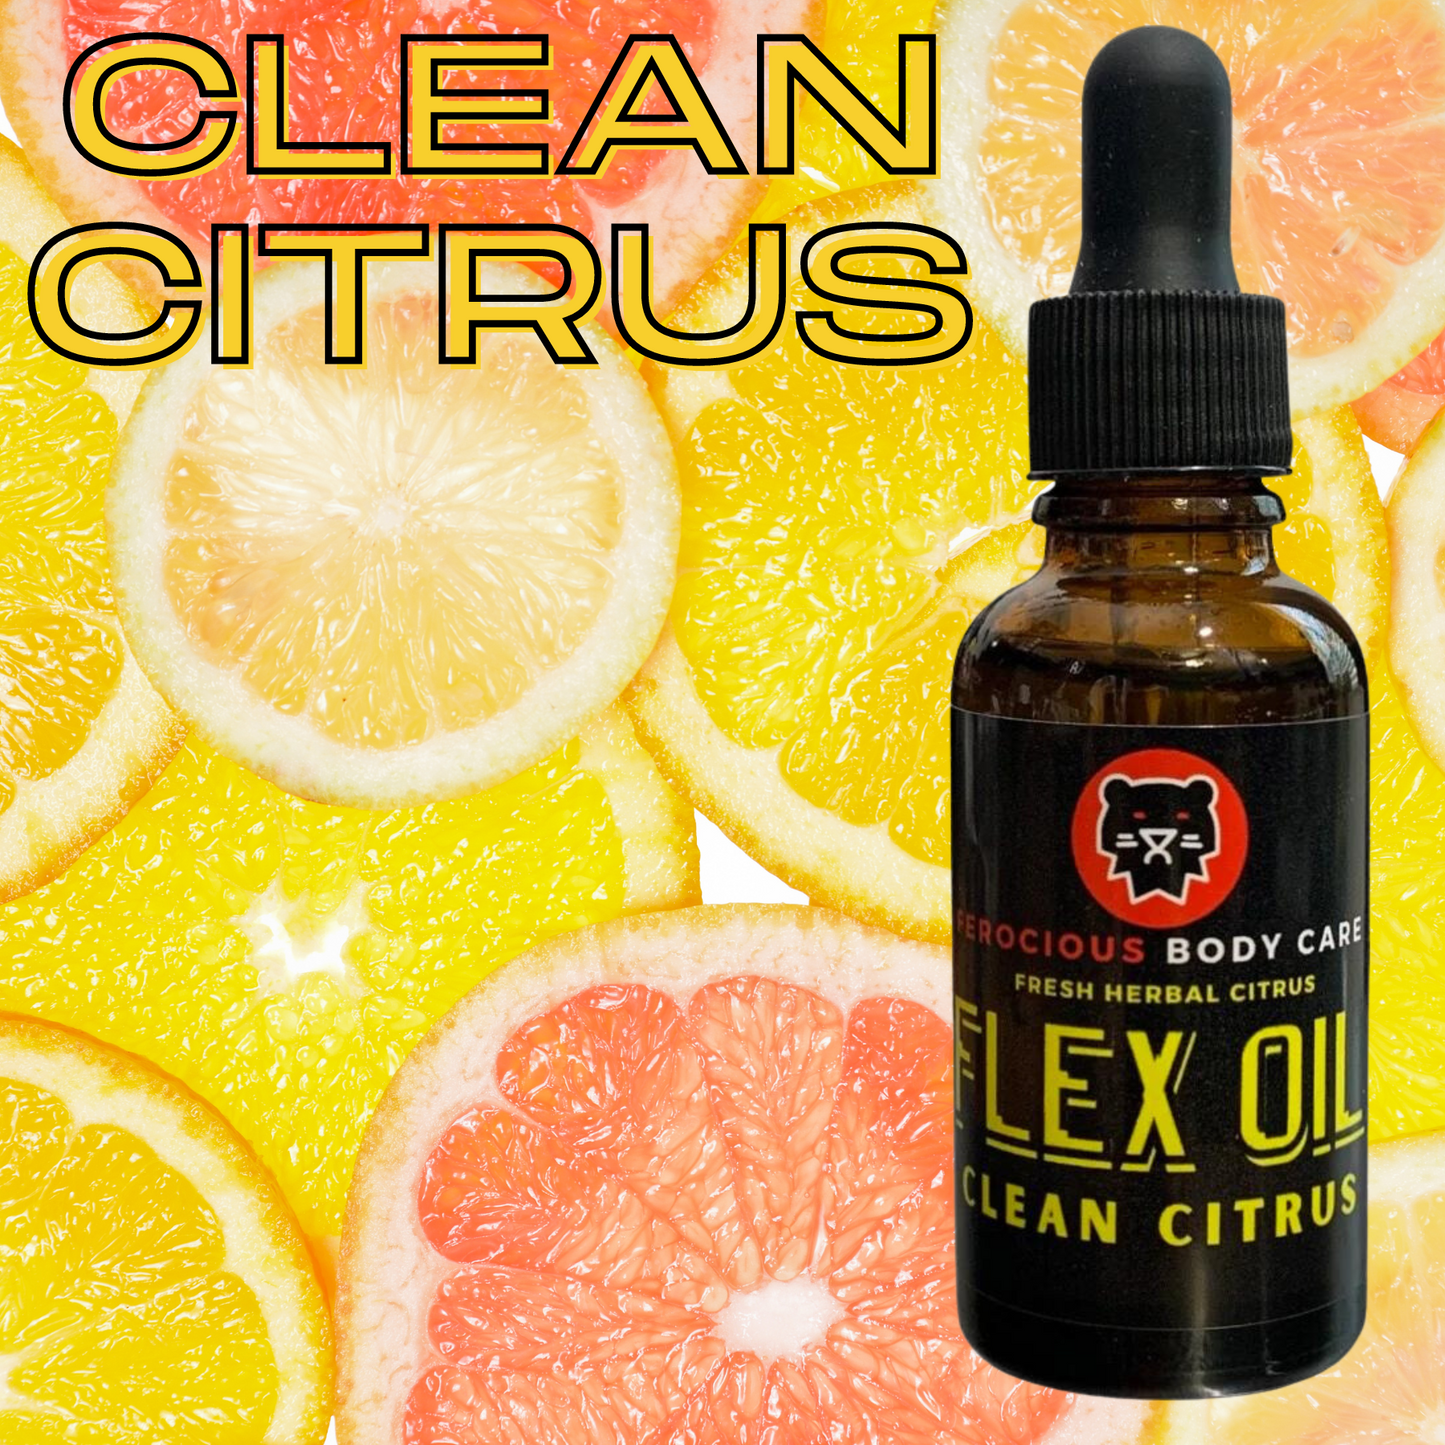 Clean Citrus Oil - A Burst of Clean Fresh Citrus & Herbs For Beard, Hair & Skin.